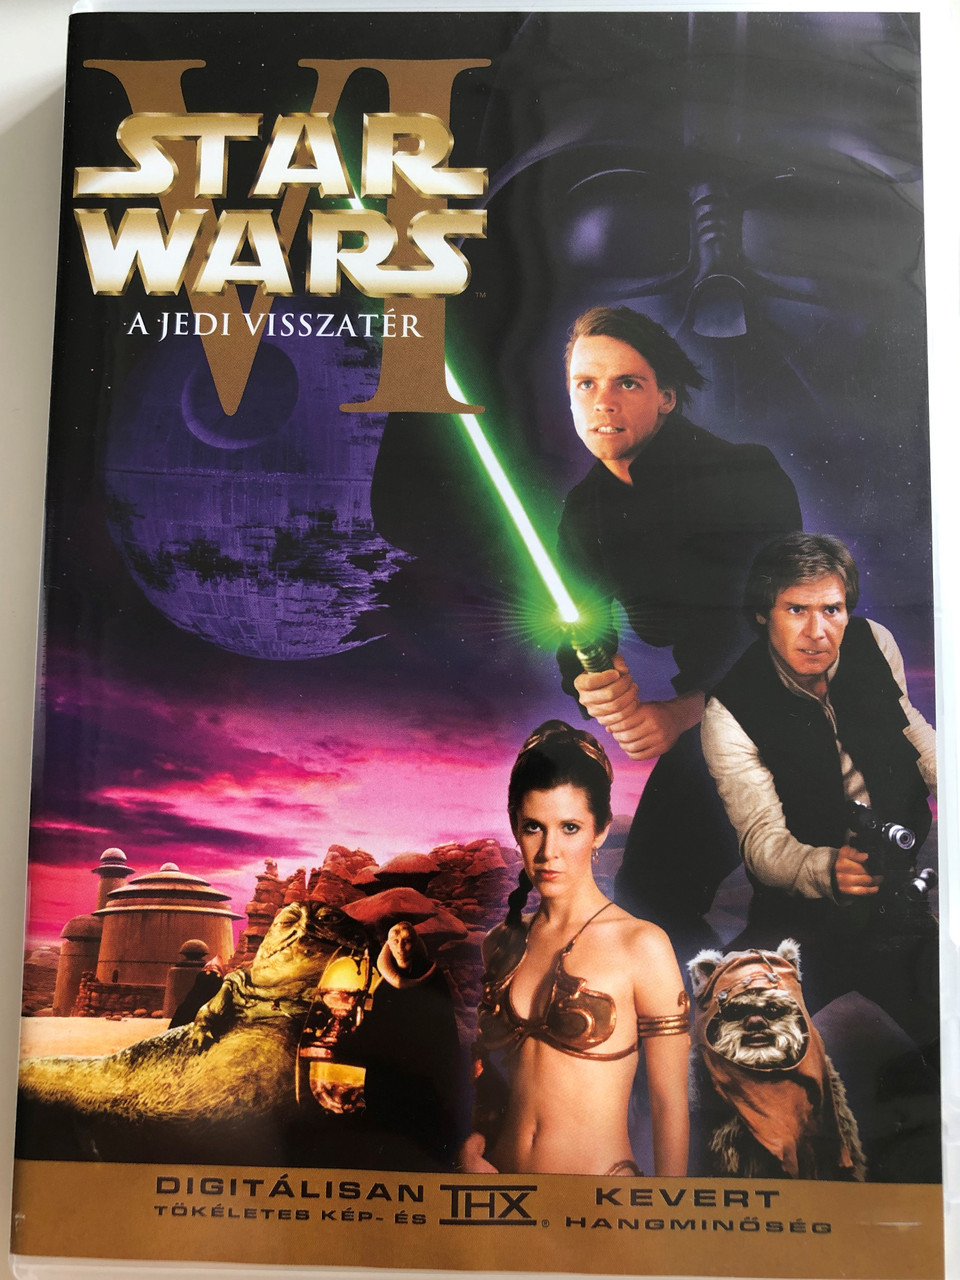 Star Wars Episode VI Return of the Jedi DVD 1983 Star Wars VI A Jedi  visszatér /